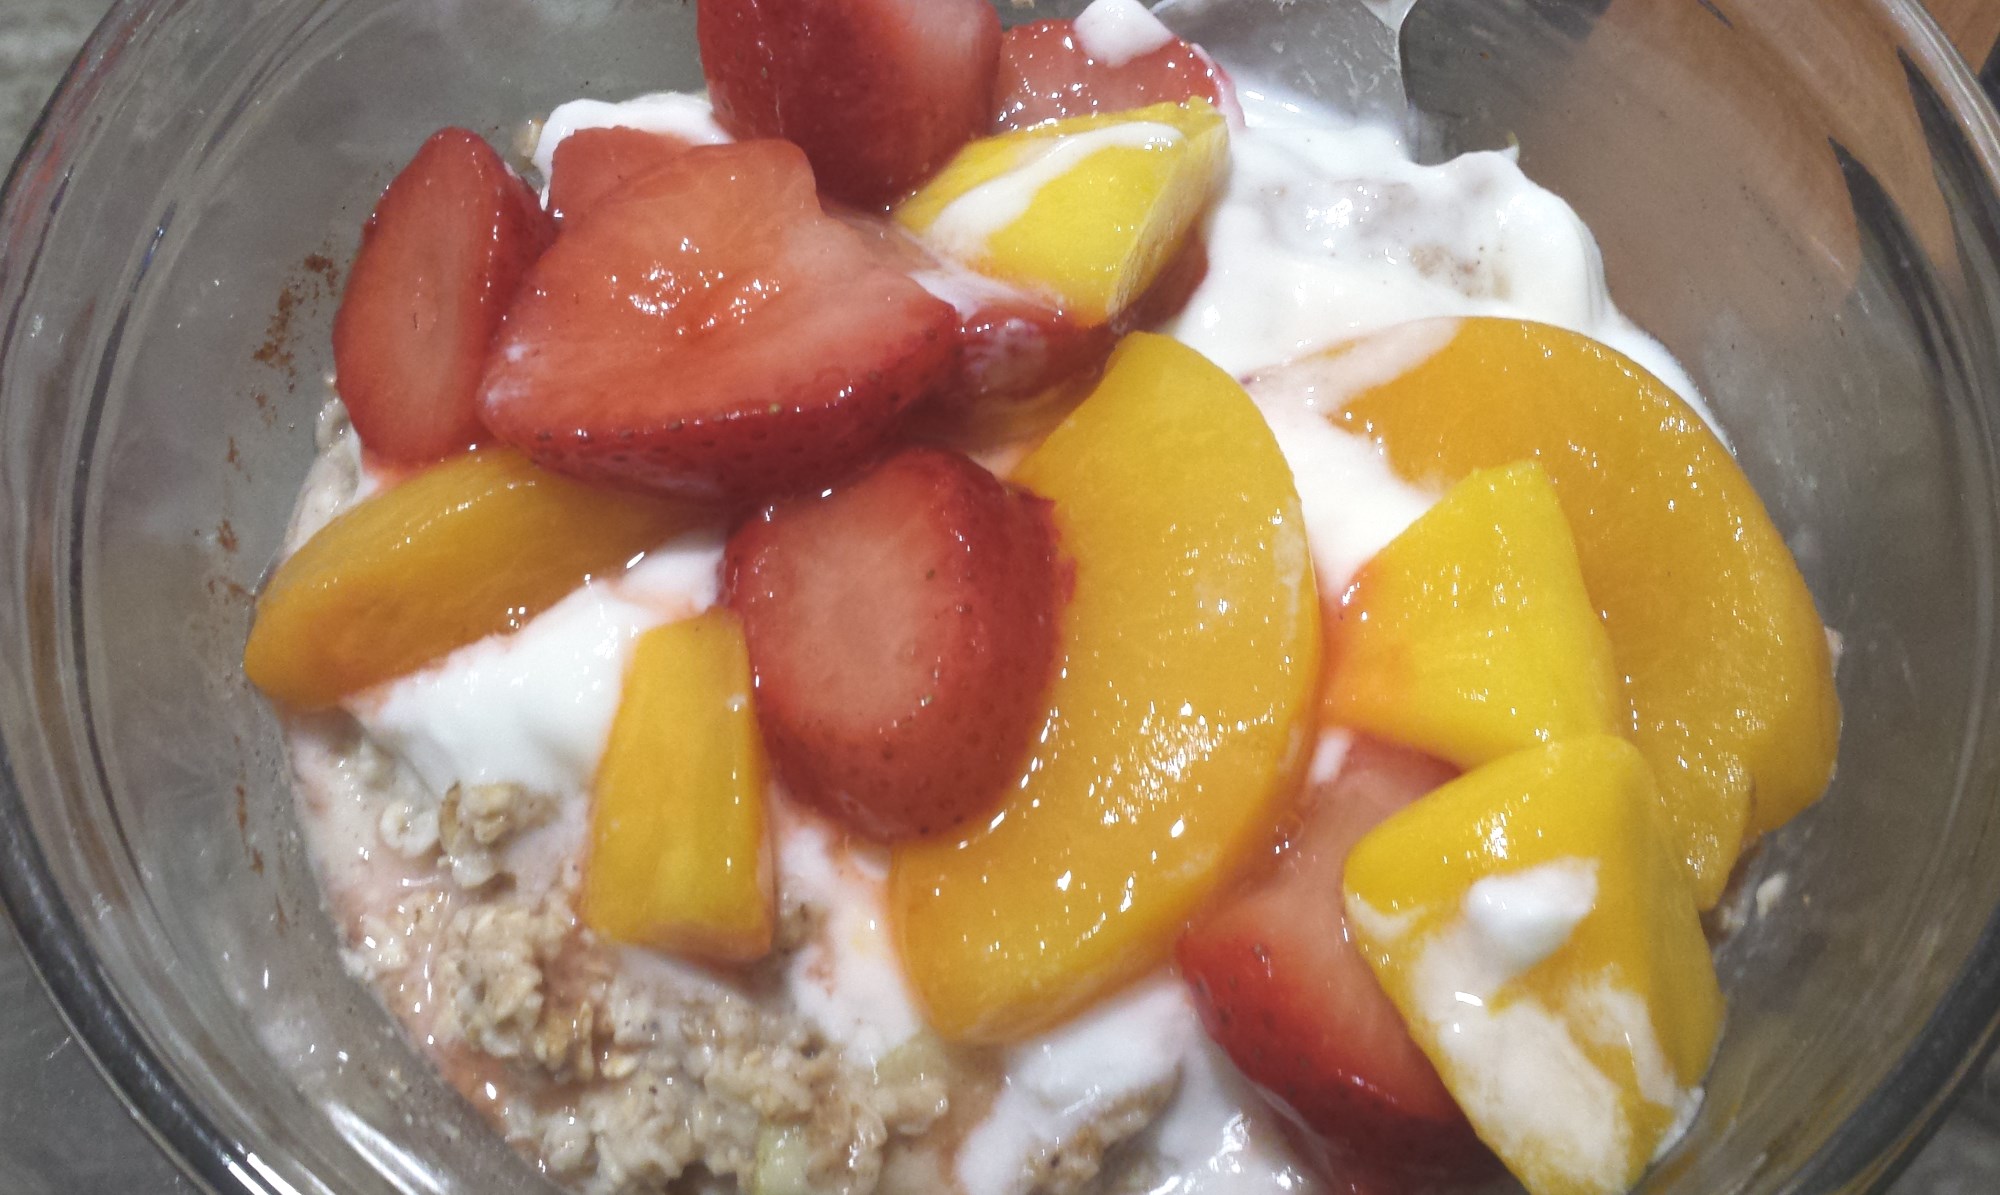 Oats, oatmeal with yogurt, milk, apples, mango, peach and strawberries 